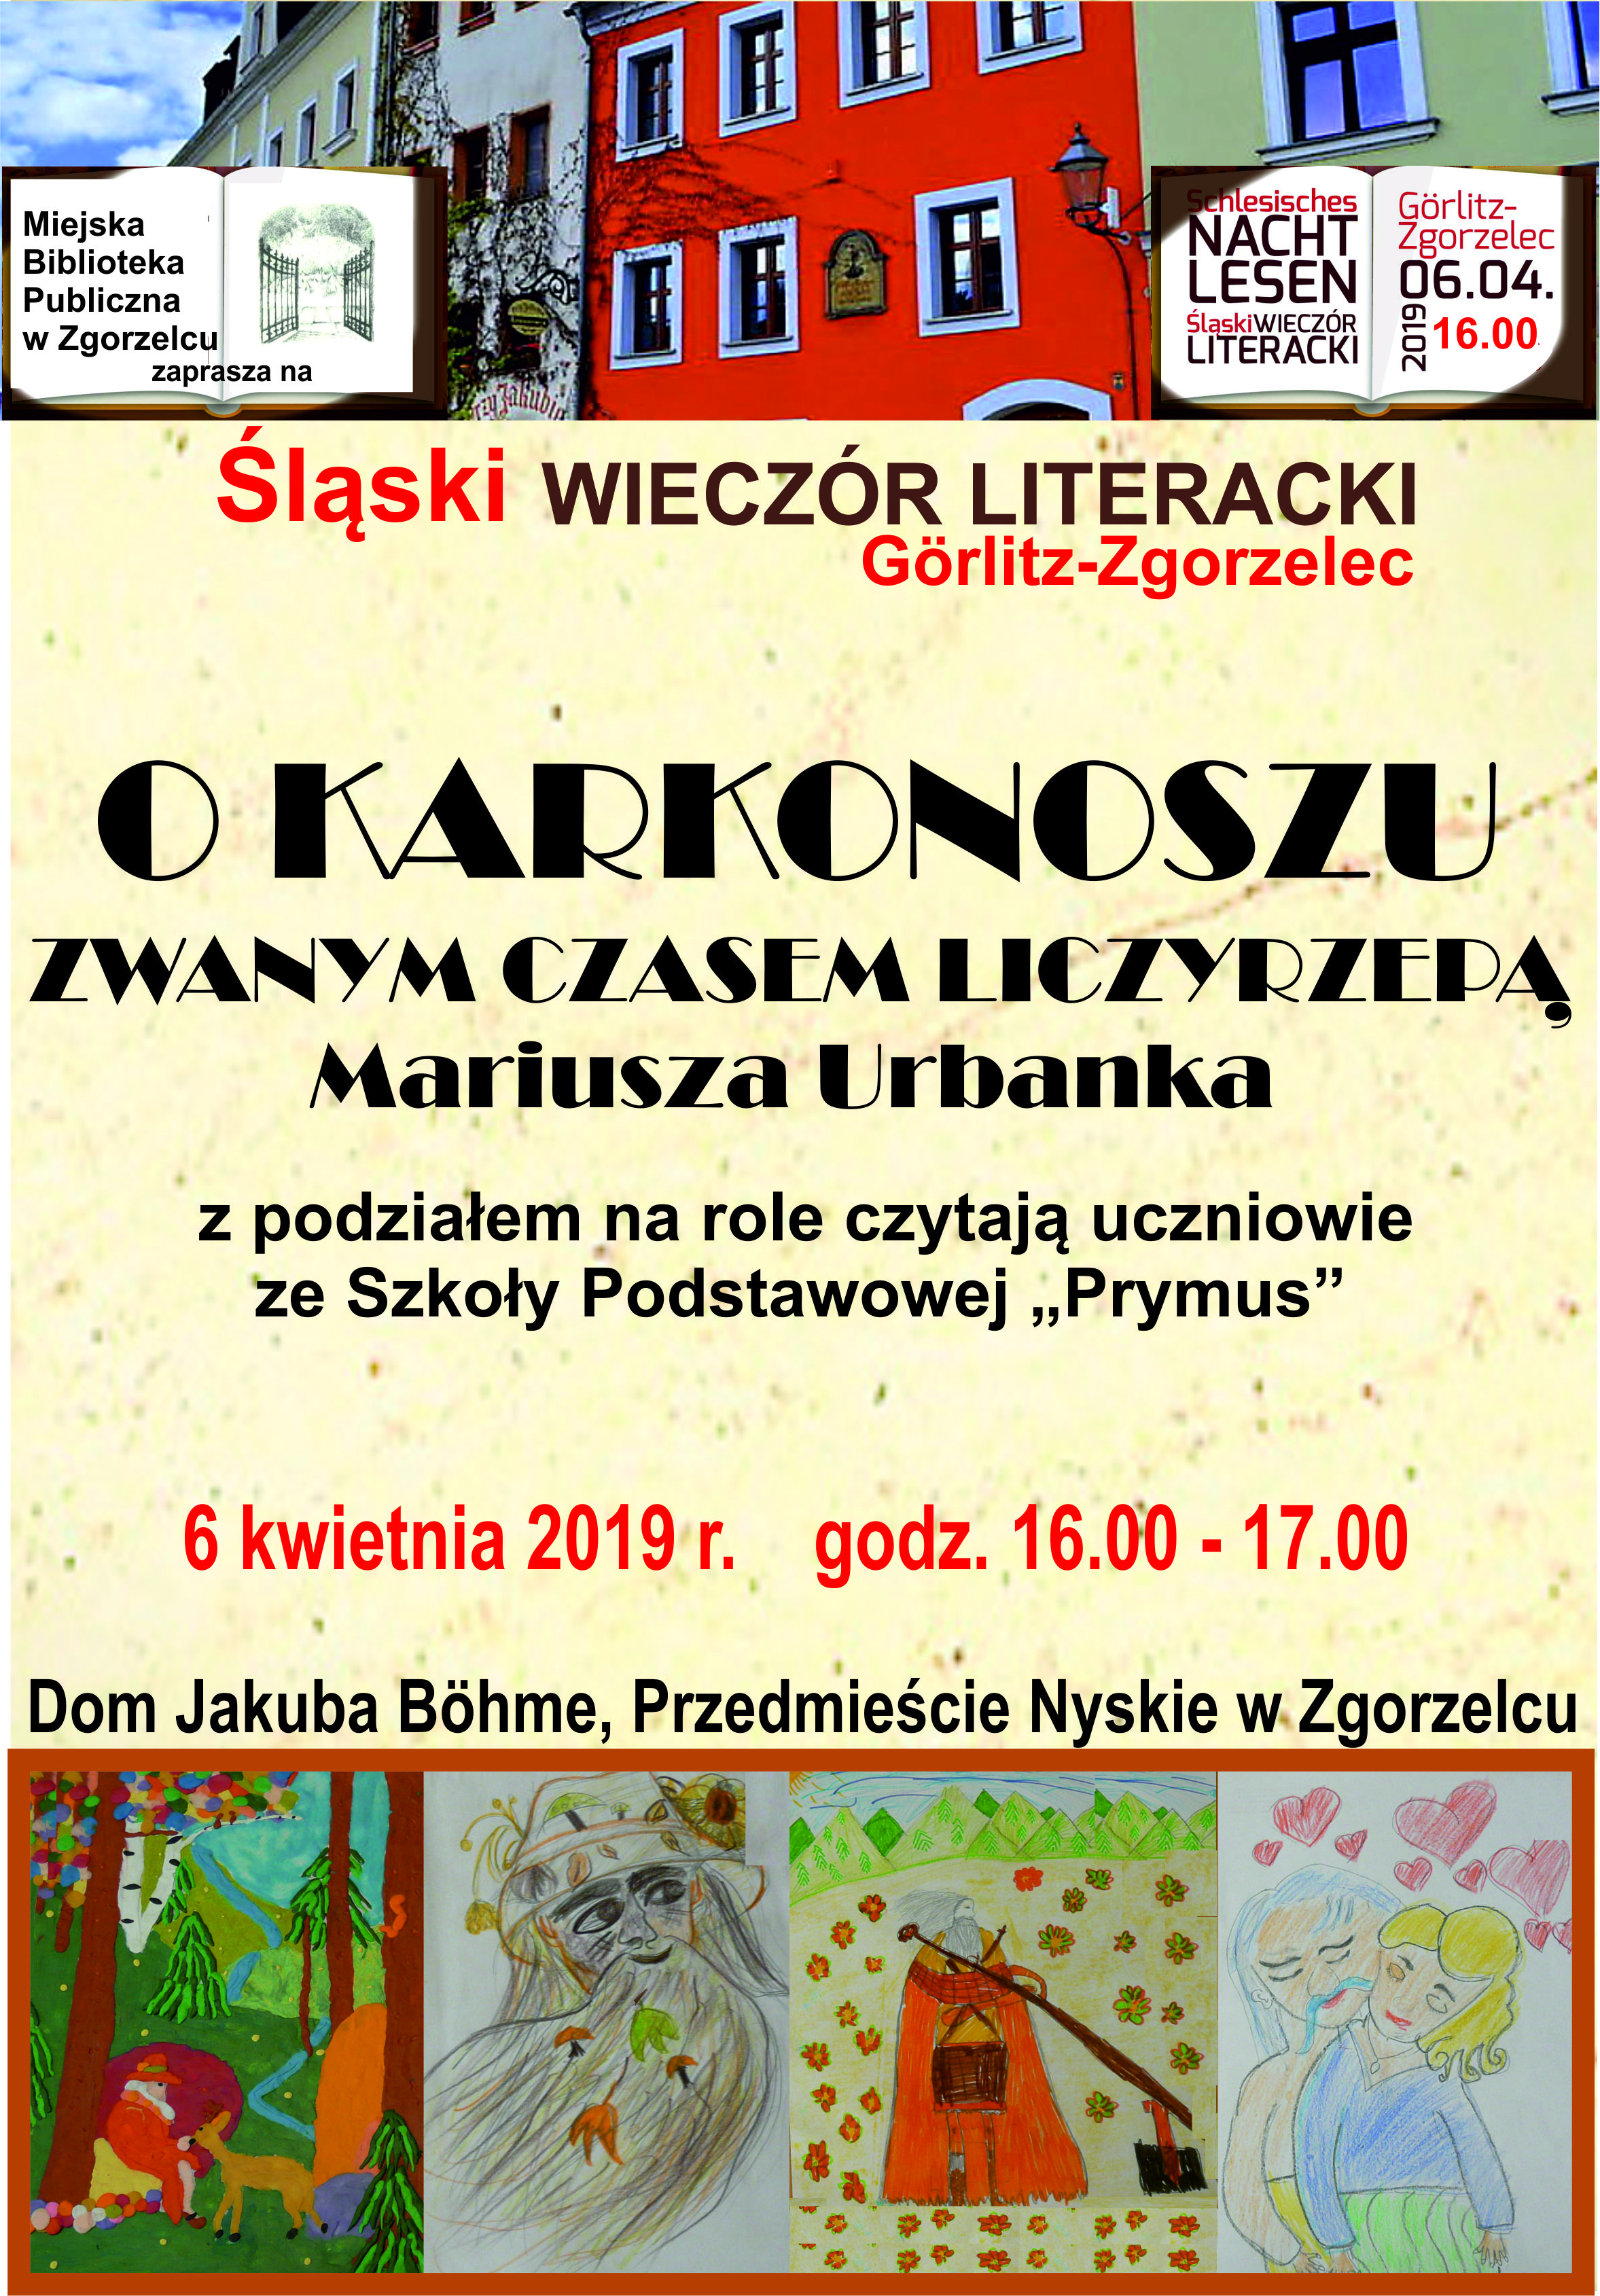 lski Wieczr Literacki.cdr 2019